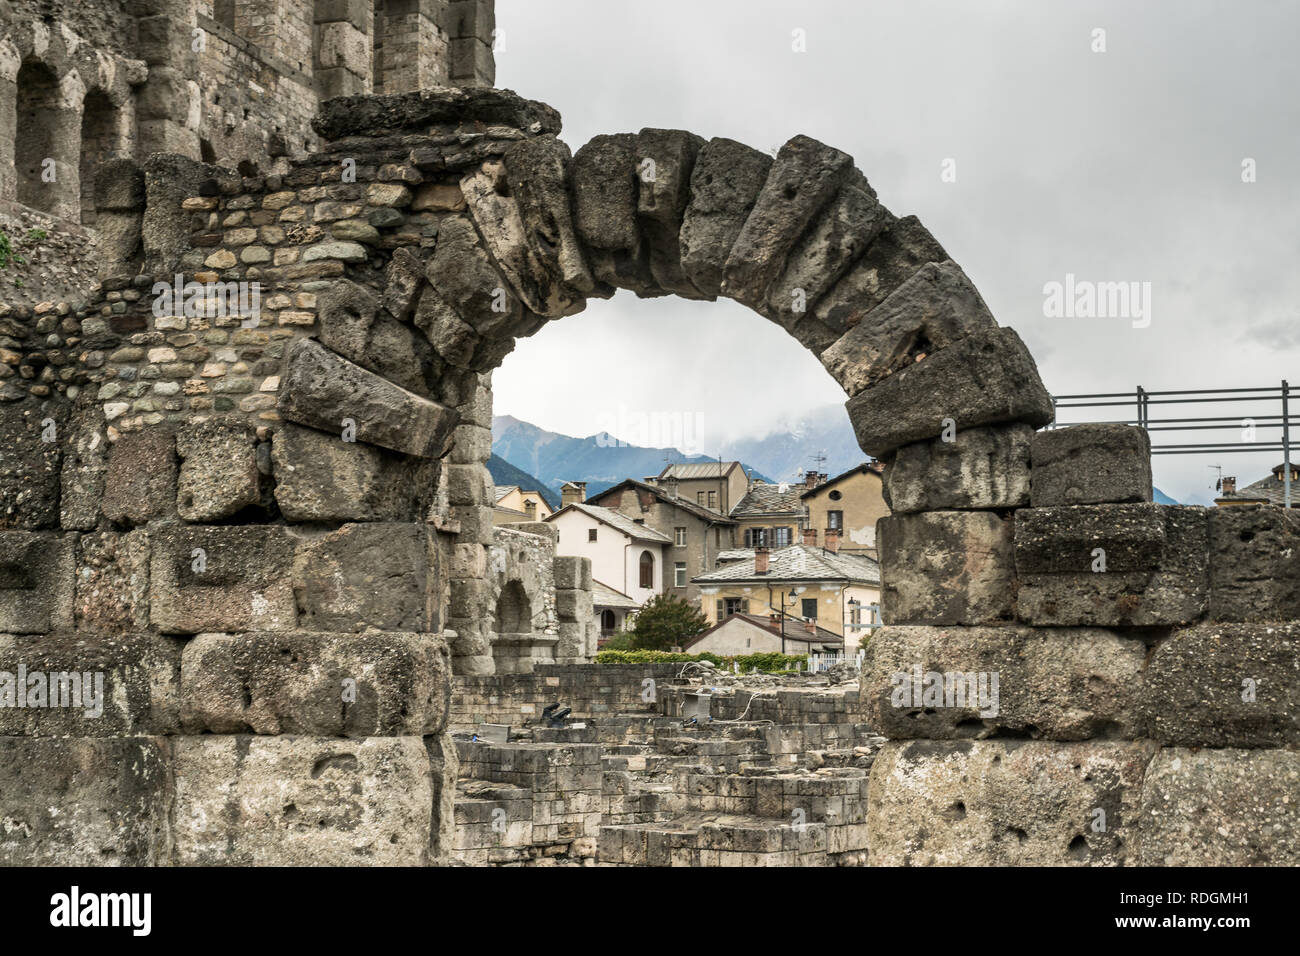 Torbogen in den Archeologischen Überresten des Teatro Romano in Aosta, Italien Stock Photo